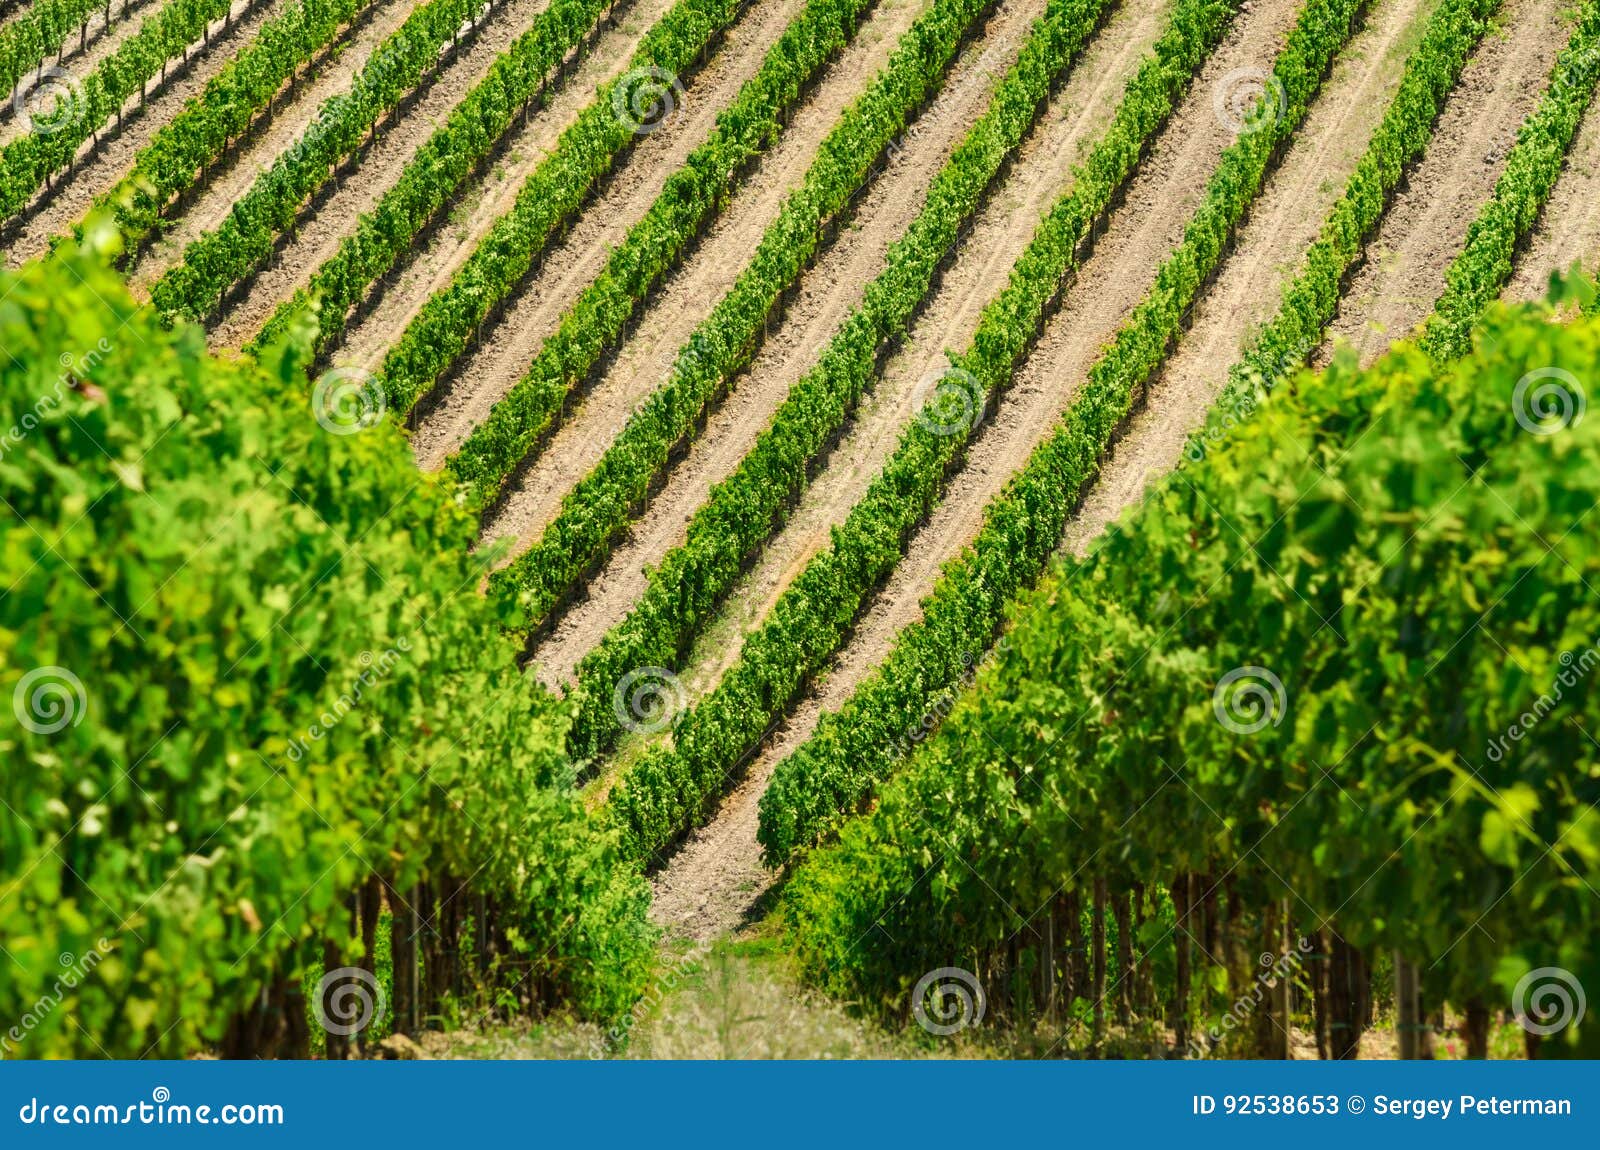 vineyard lines view